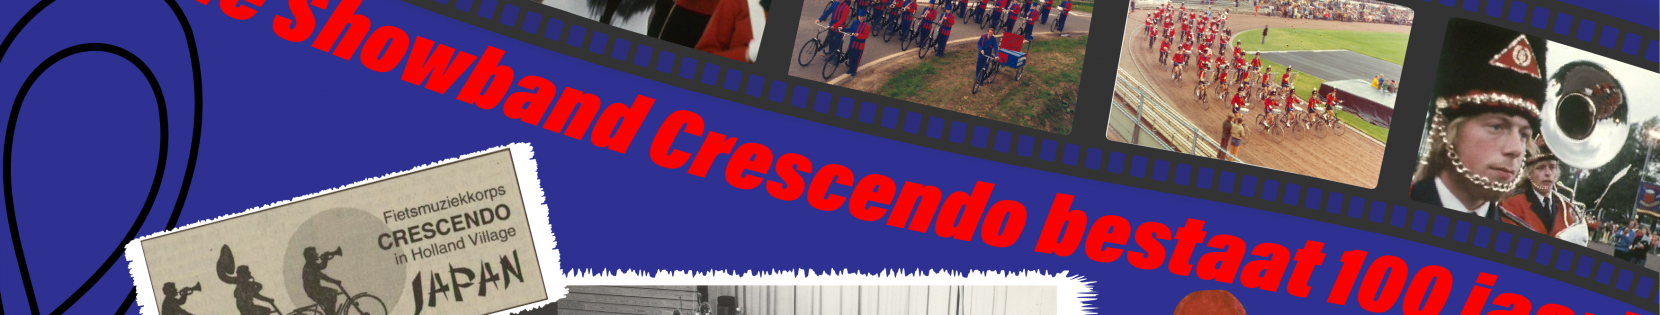 In 2022 bestaat de Bicycle Showband Crescendo 100 jaar